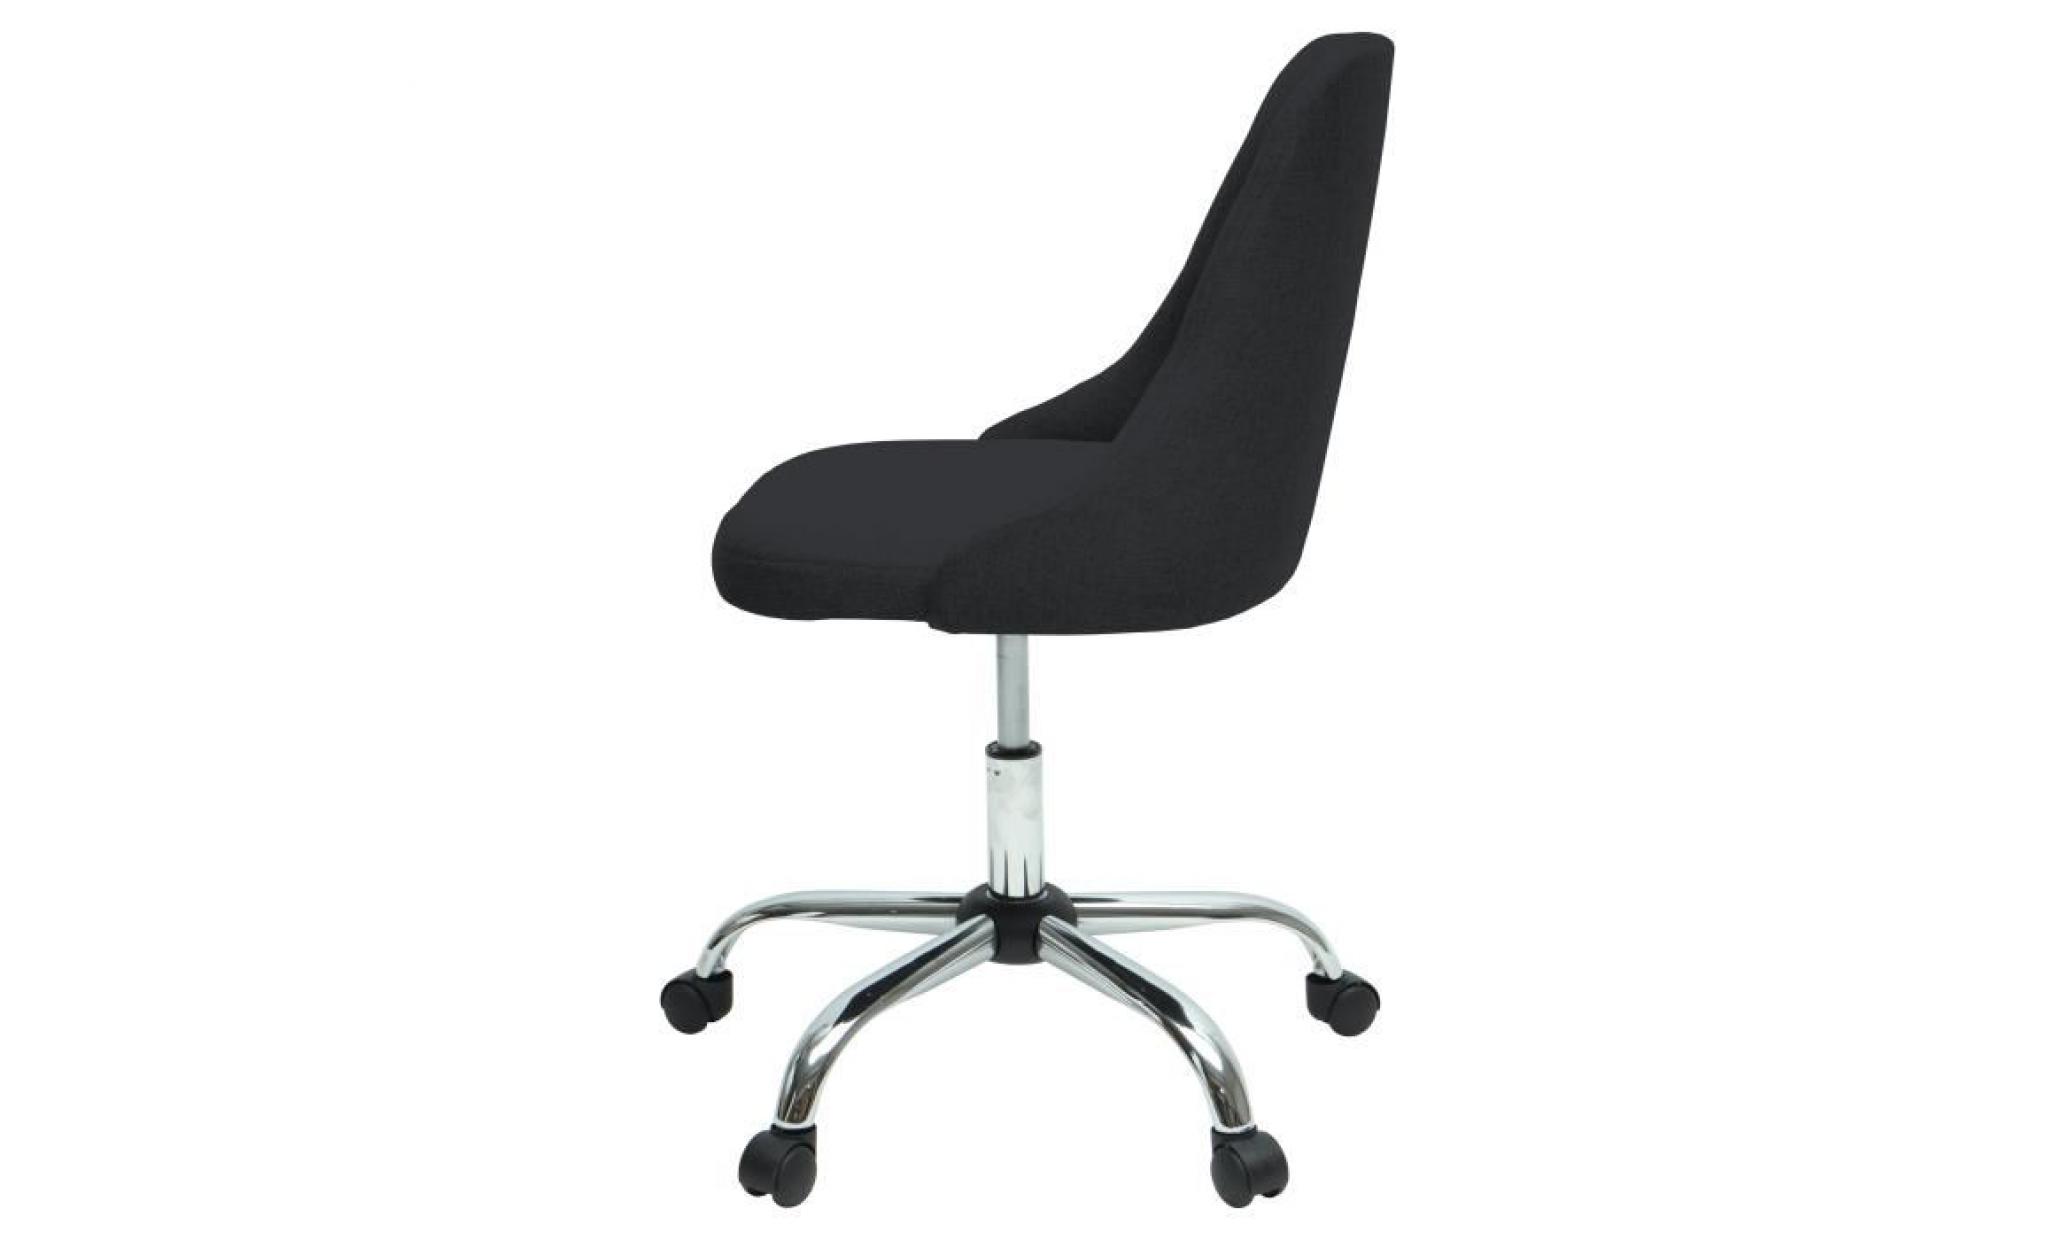 sigma chaise de bureau   simili et tissu noir   style contemporain   l 45,5 x p 47,5 cm pas cher